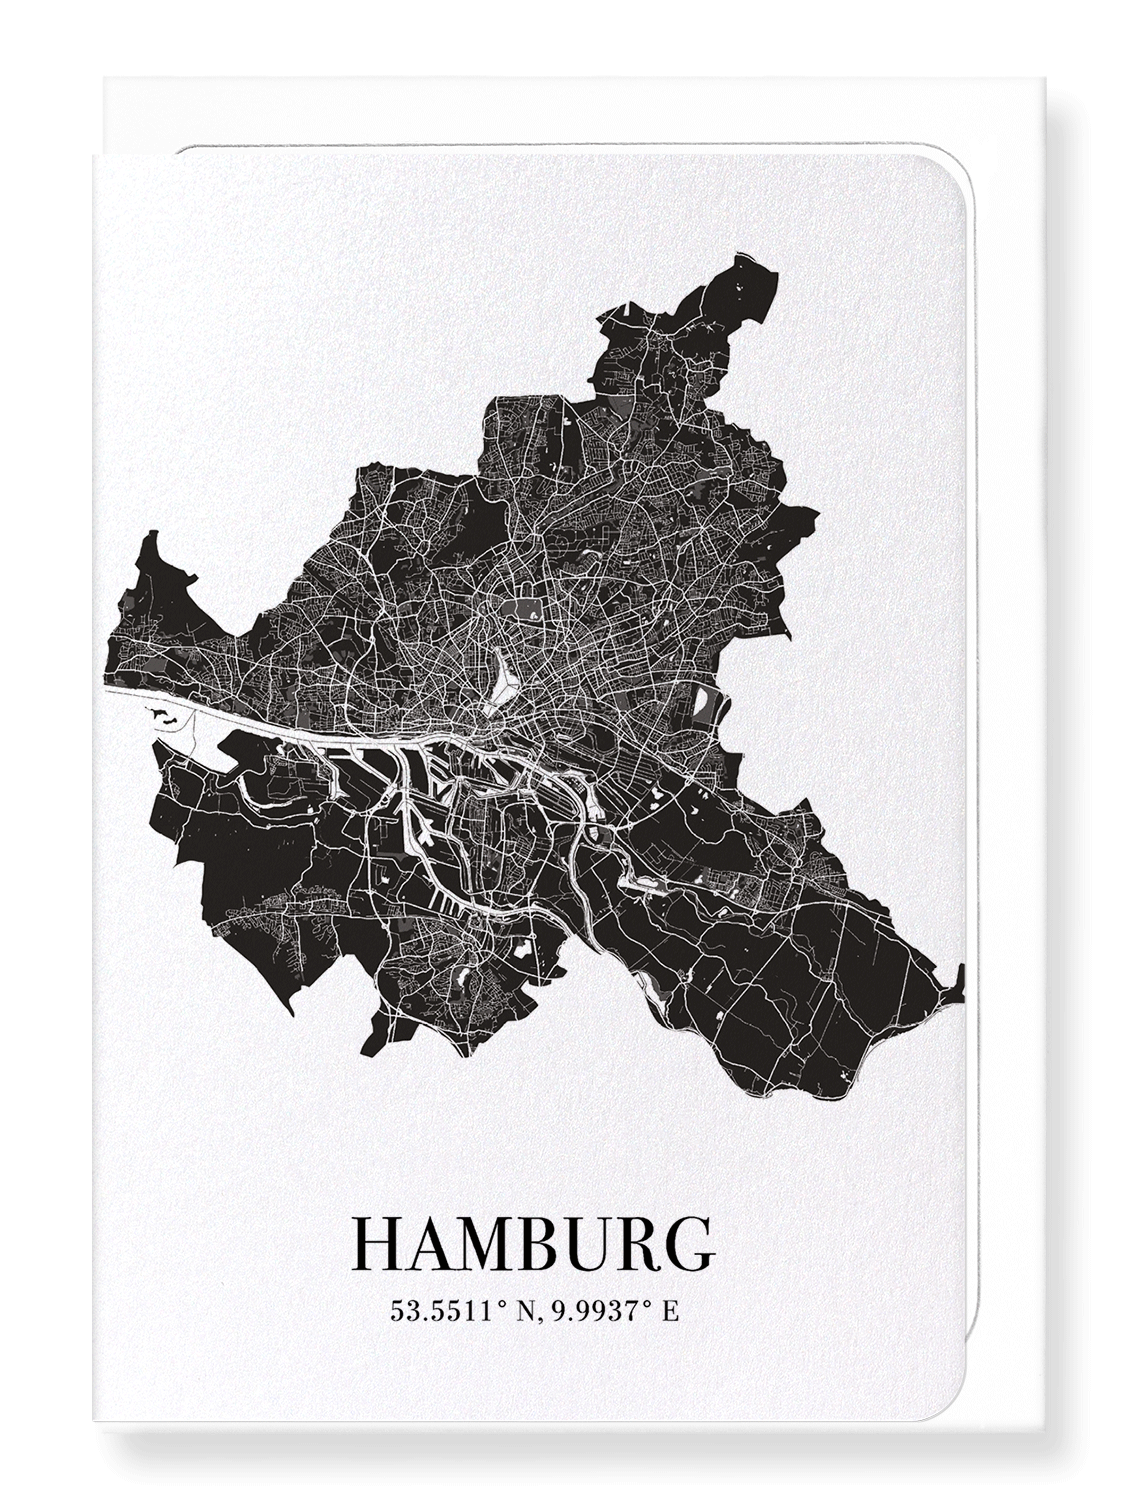 HAMBURG CUTOUT: Map Cutout Greeting Card